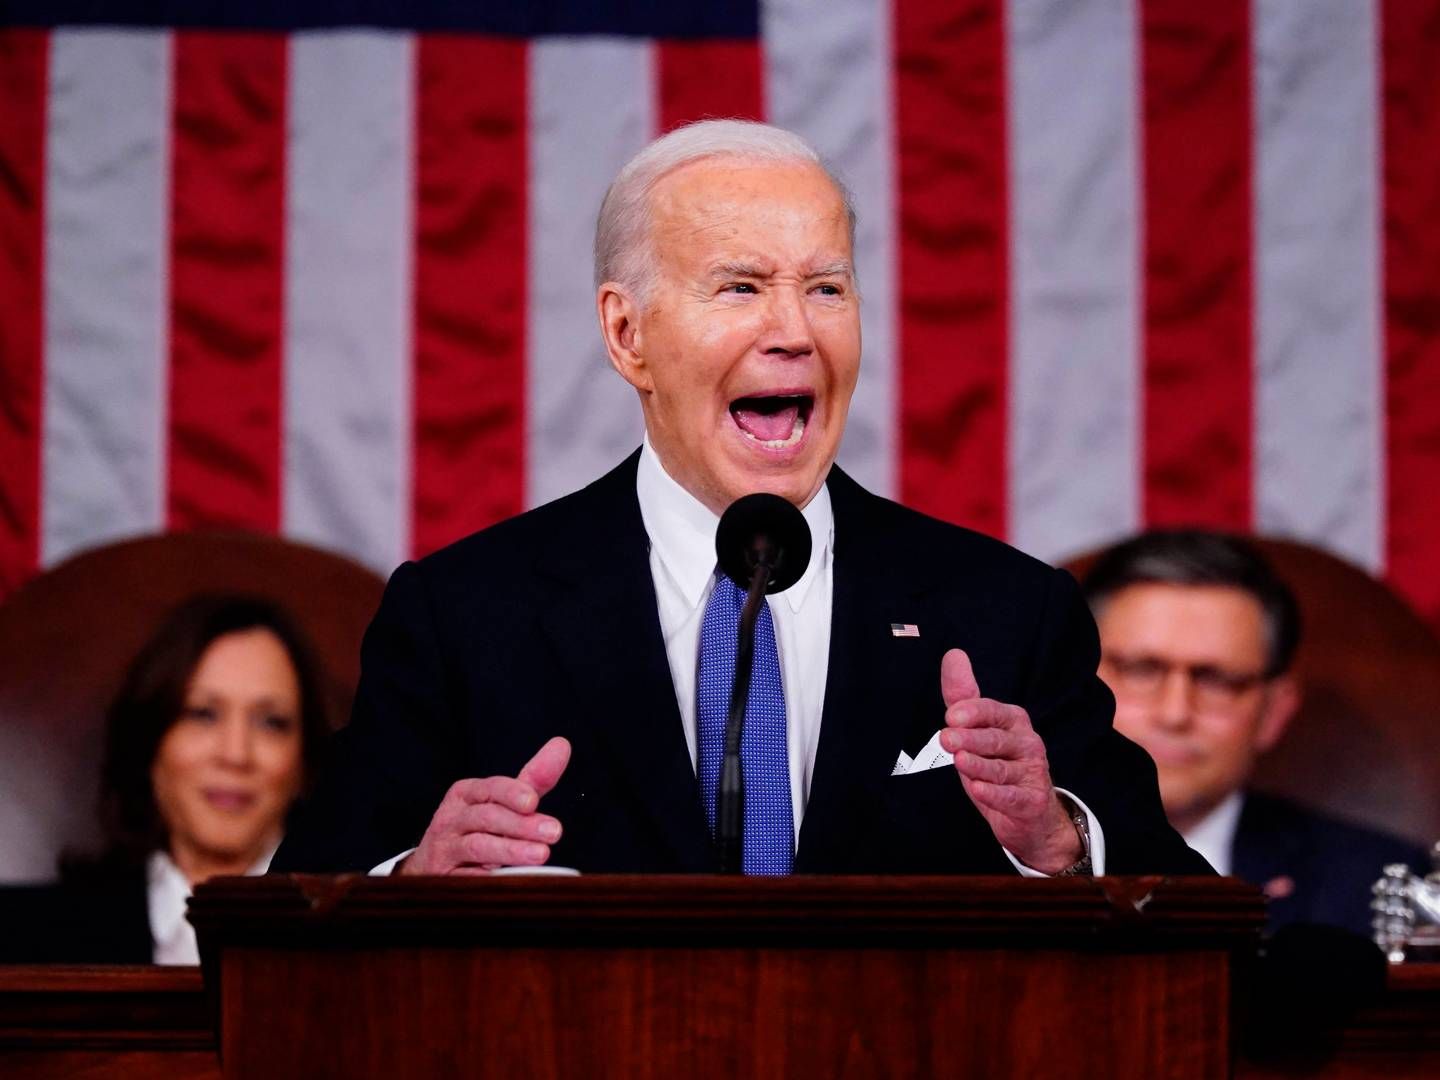 USA's præsident, Joe Biden, viste, at han følte sig hjemme på talerstolen og hjemme i Kongresbygningen. Sådan lyder det fra ph.d. i retorik fra Københavns Universitet, foredragsholder og forfatter Mark Herron. | Foto: Shawn Thew/AFP/Ritzau Scanpix